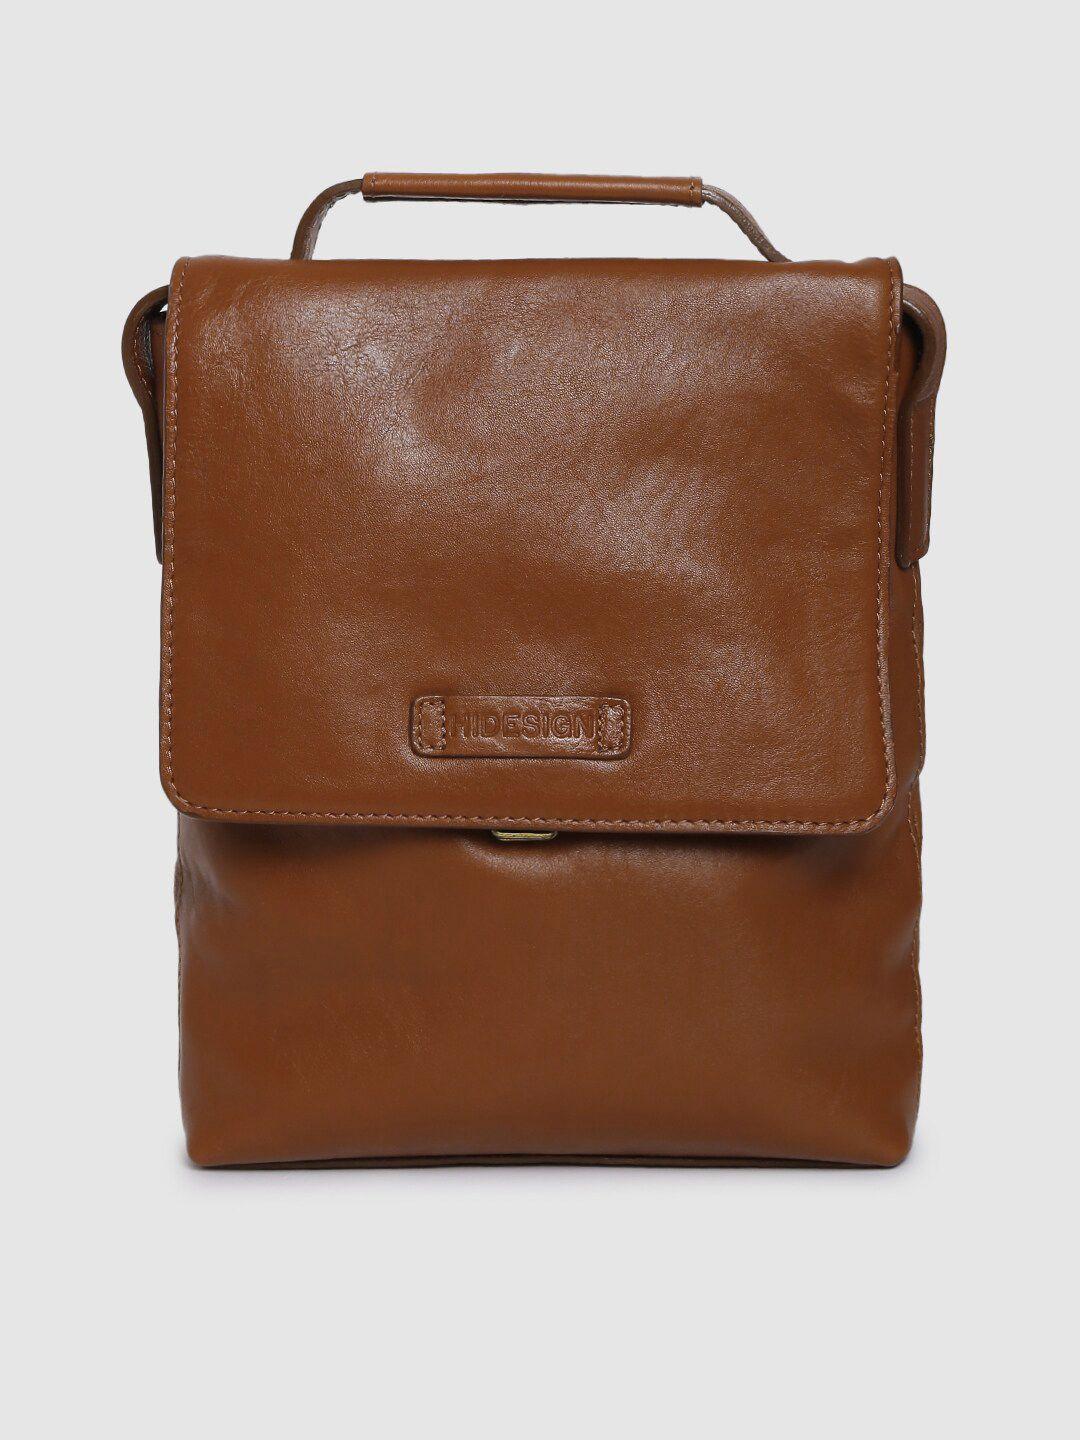 hidesign men tan solid ee orion 01 leather messenger bag